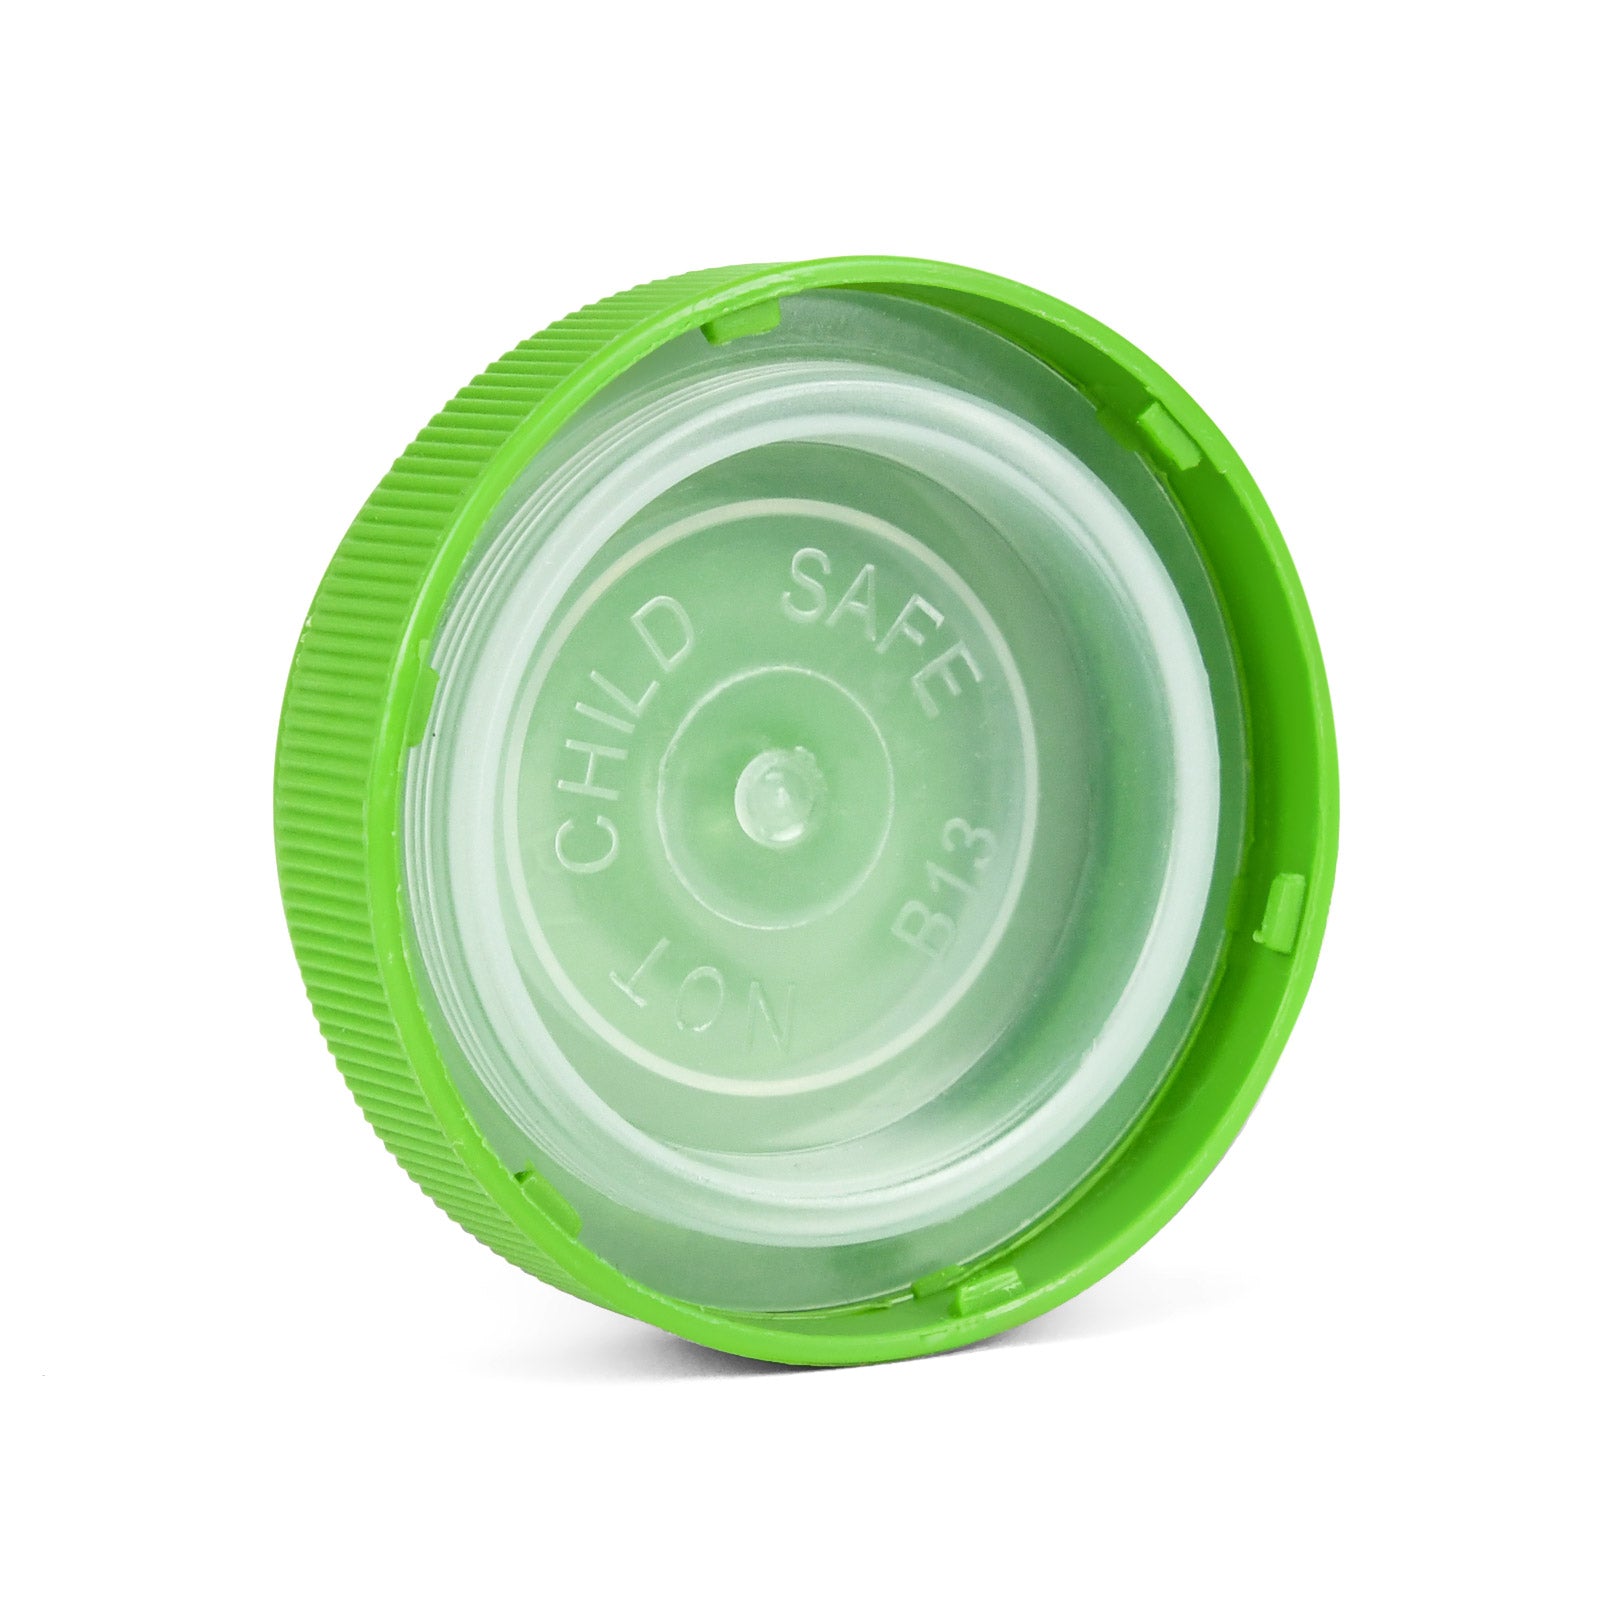 30 Dram Reversible Cap Opaque Green - 1 Count